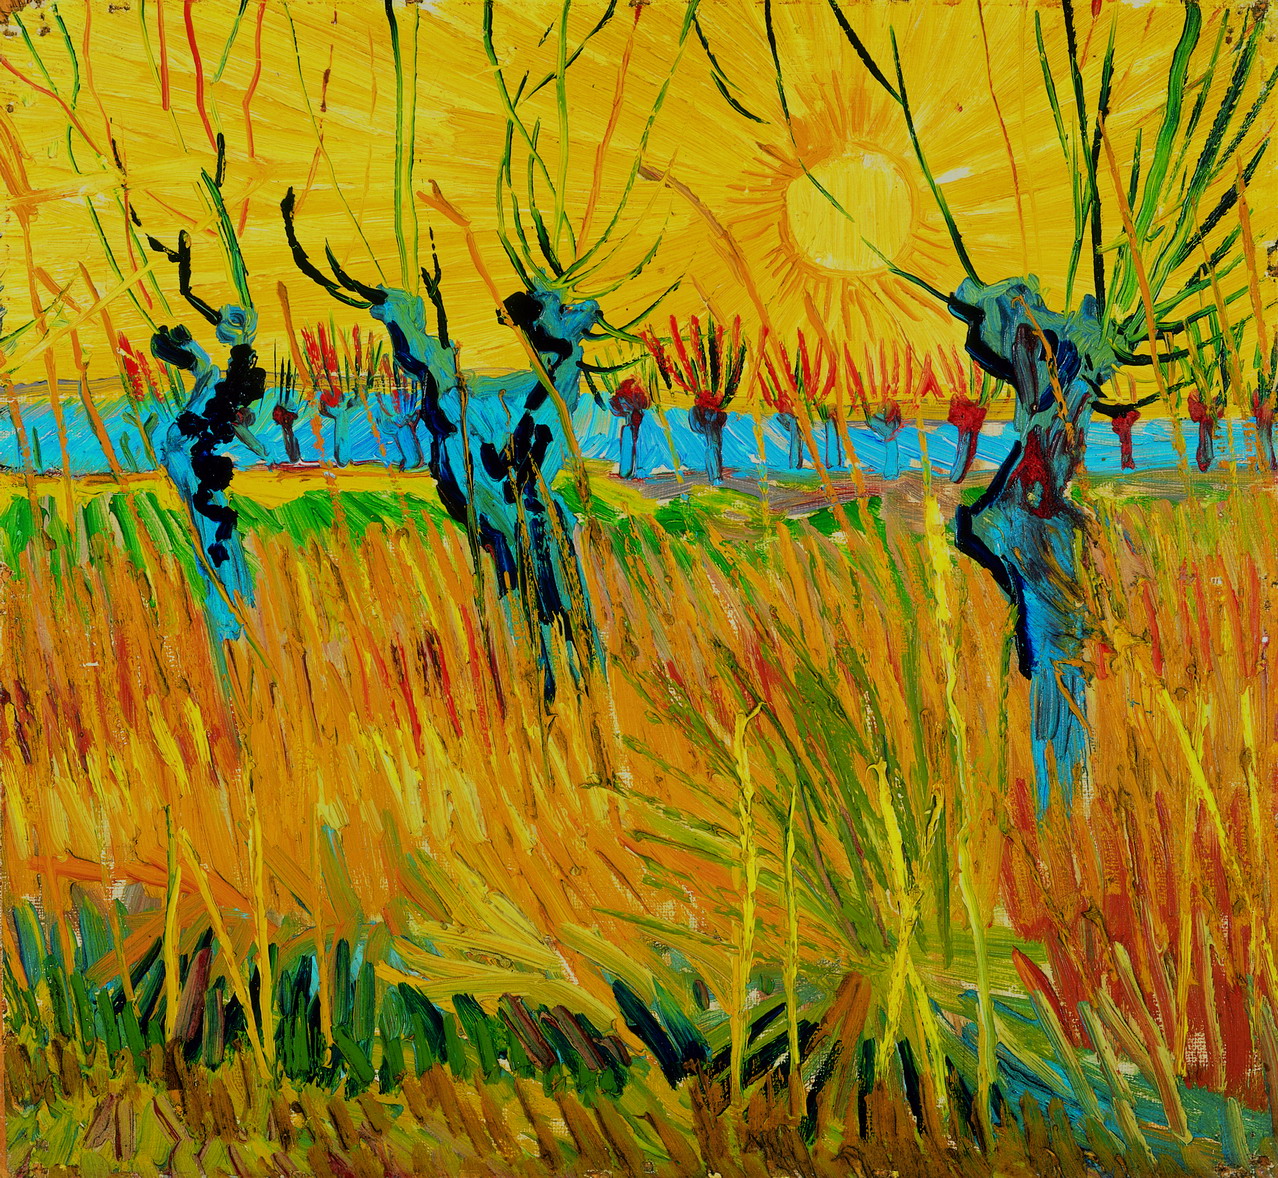 Gün Batımında Budanmış Söğütler by Vincent van Gogh - 1888 - 31,6 x 34,3 cm Kröller-Müller Museum